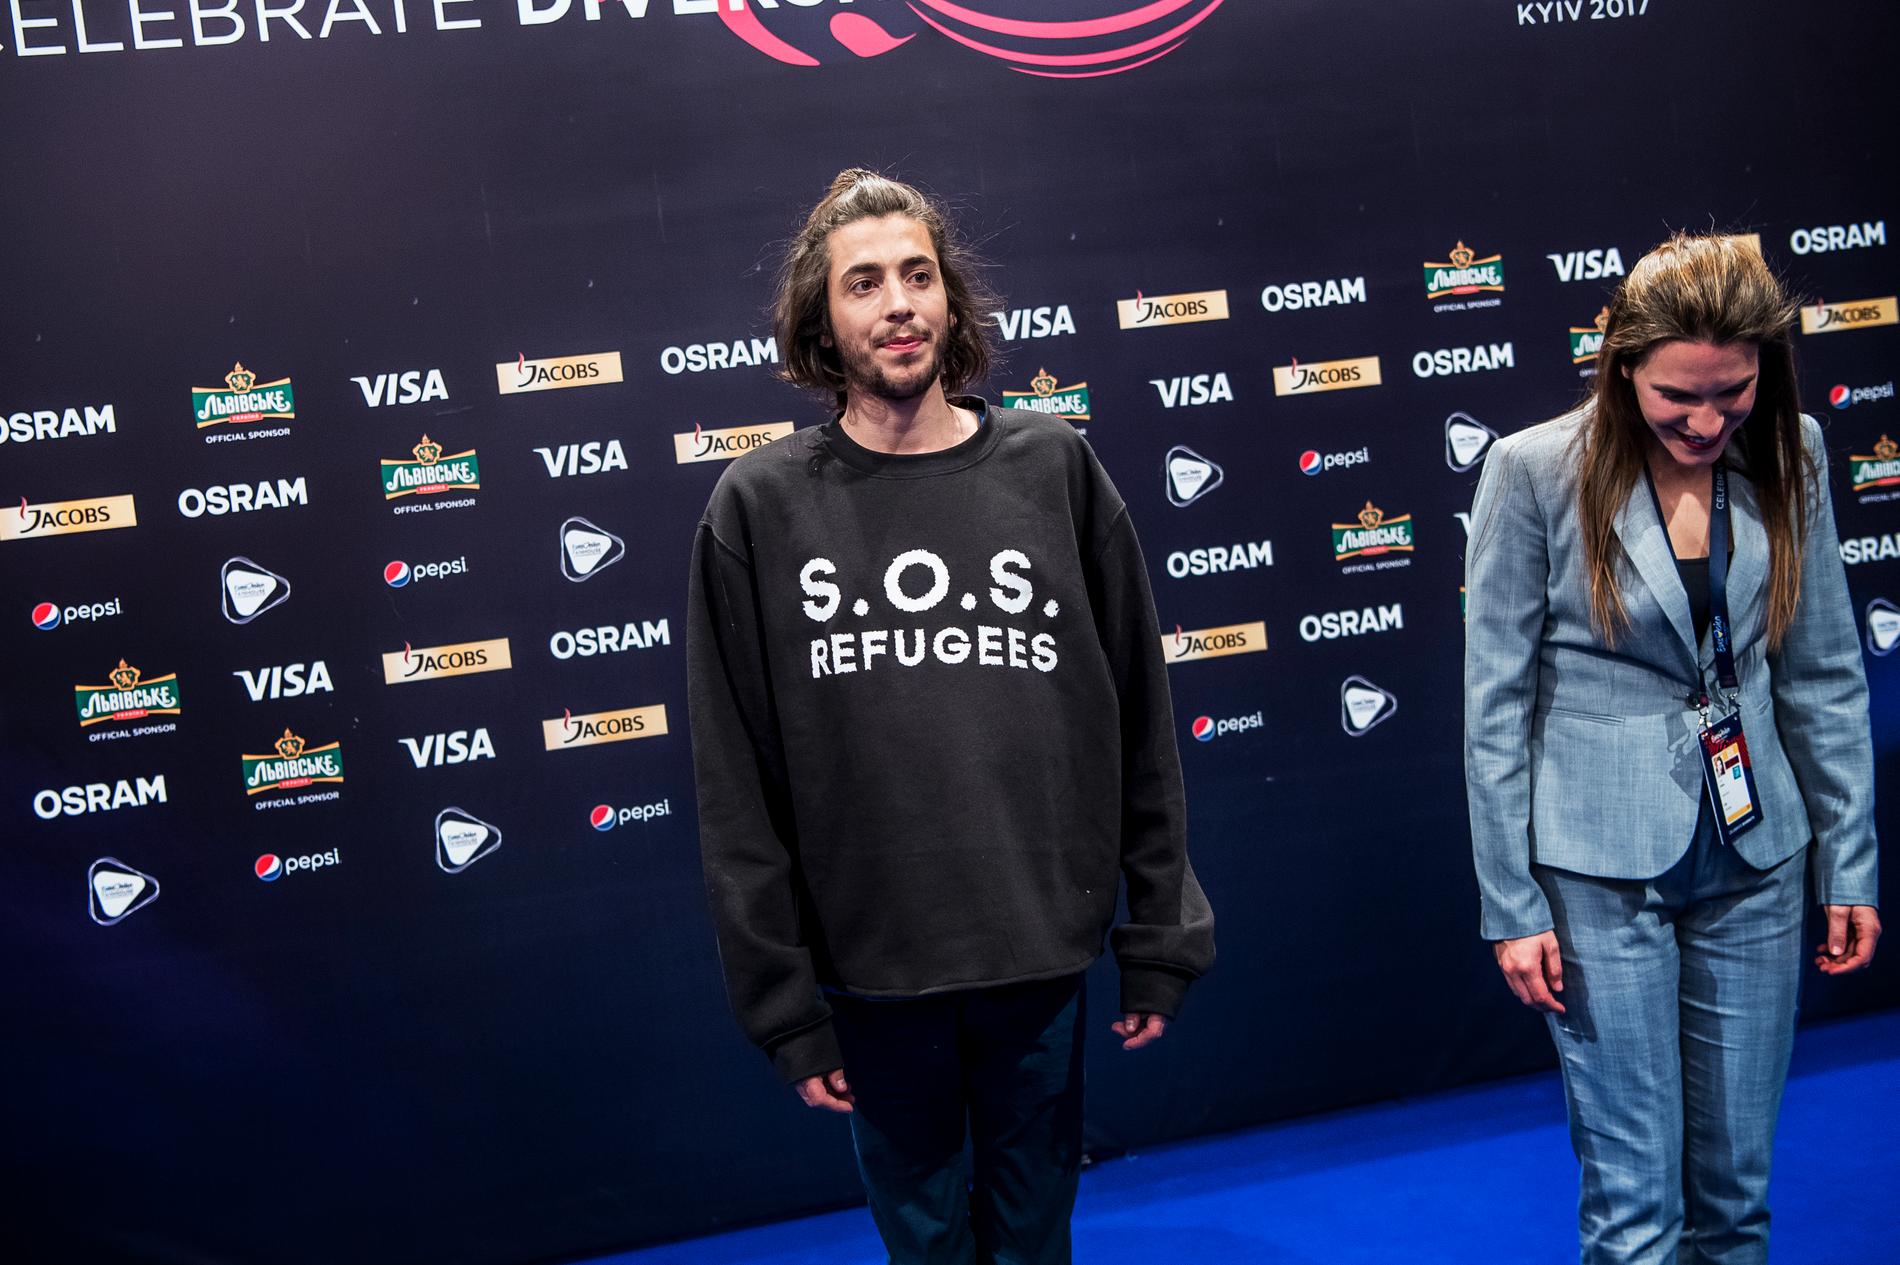 Gabriel Sobral från Portugal visar upp tröjan på presskonferensen efter semifinalen i Eurovision song contest.